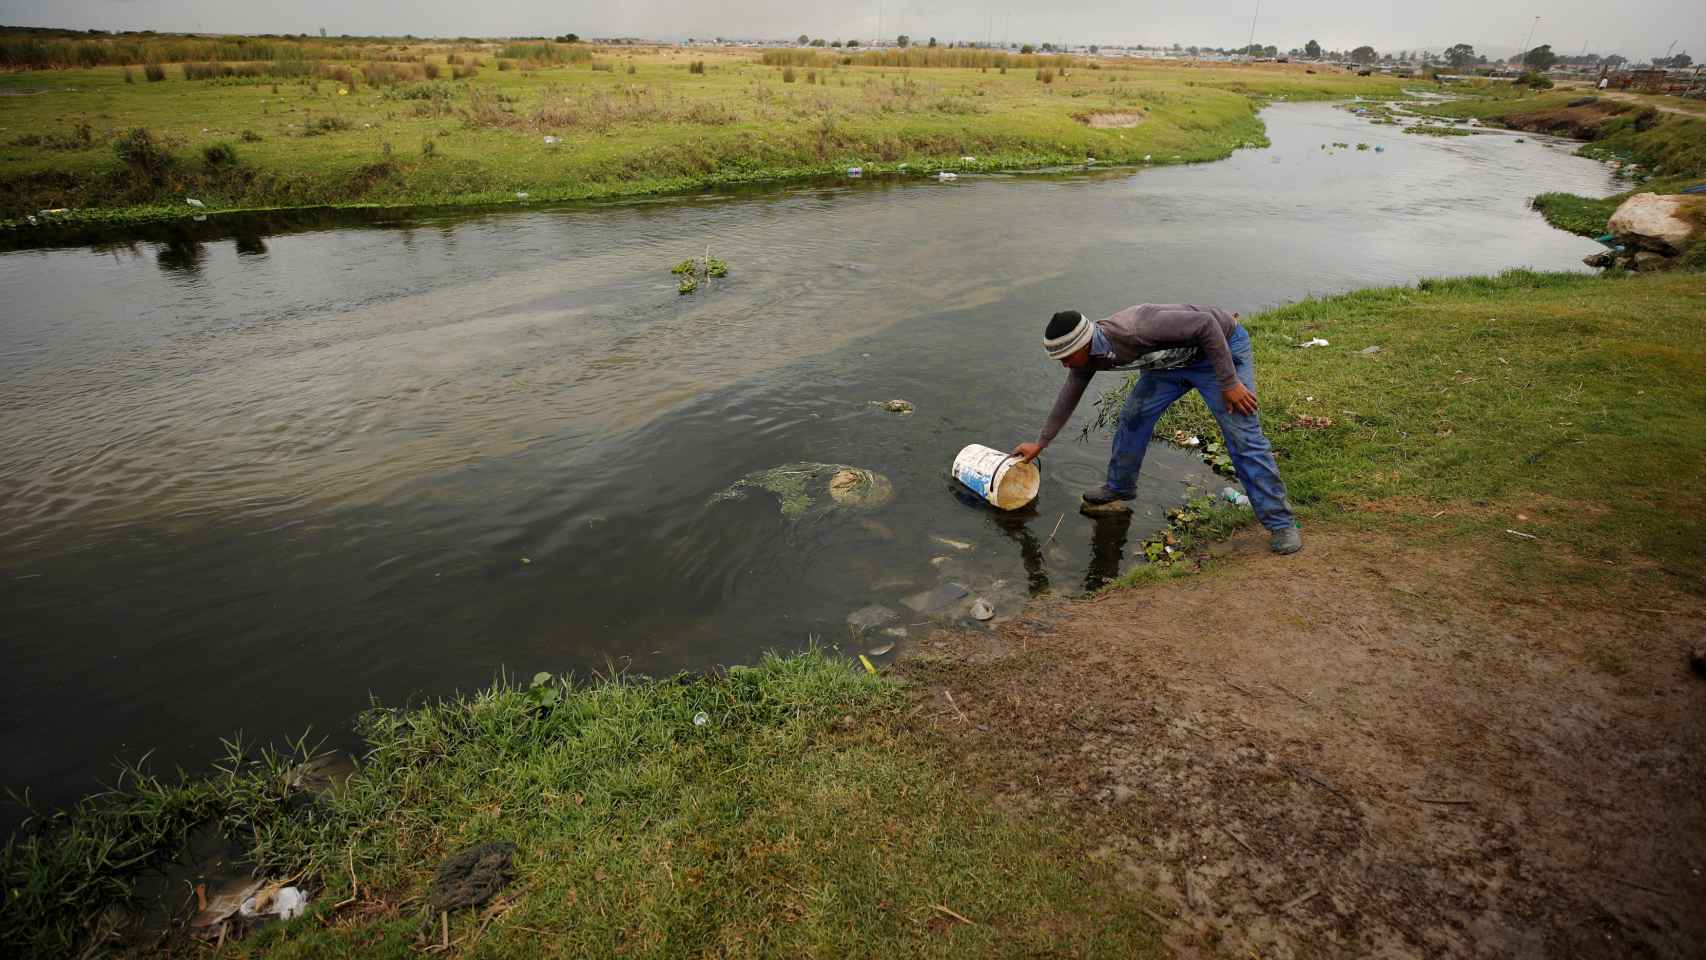 En los suburbios más pobres se saca agua incluso de arroyos contaminados.